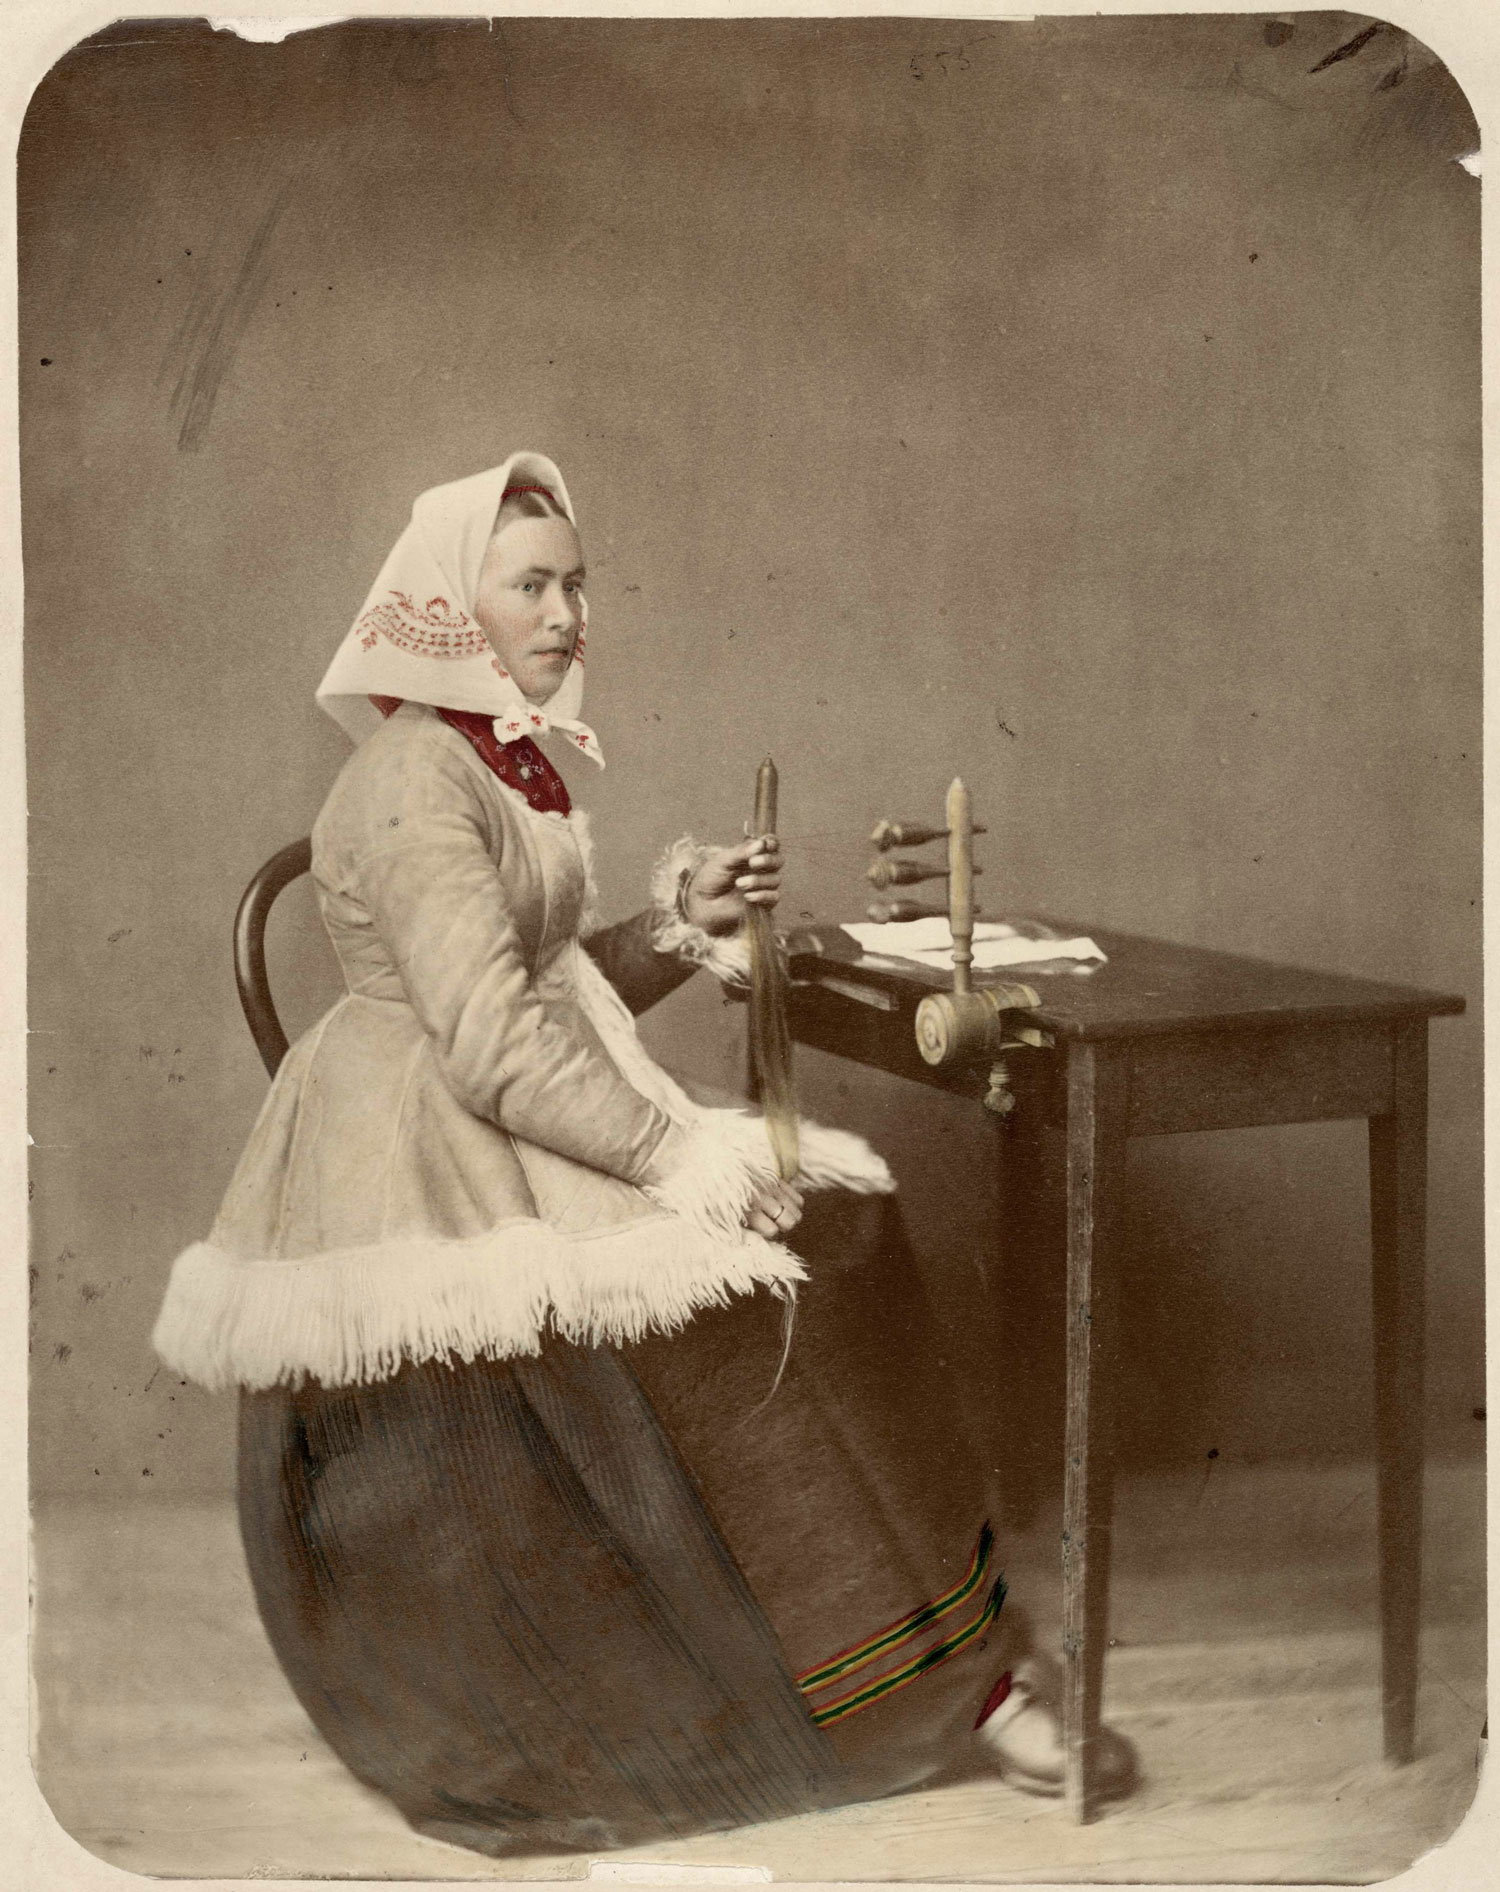 Kvinna i huvudsjal och folkdräkt sitter vid arbetsbord och flätar hår med redskap.